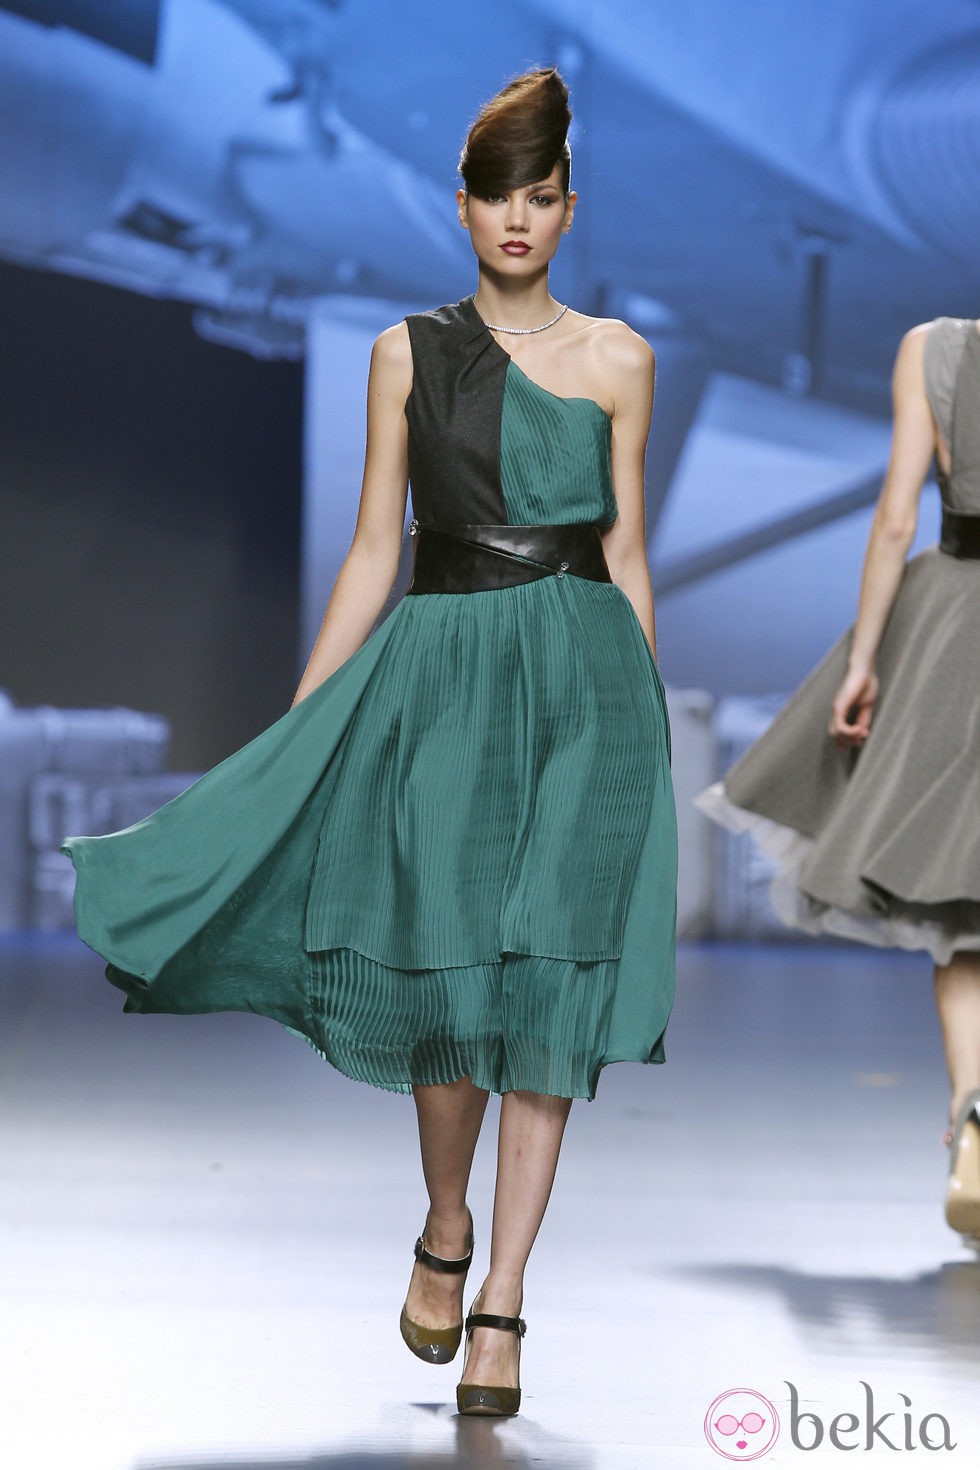 Vestido asimétrico verde y negro de Ion Fiz en Fashion Week Madrid